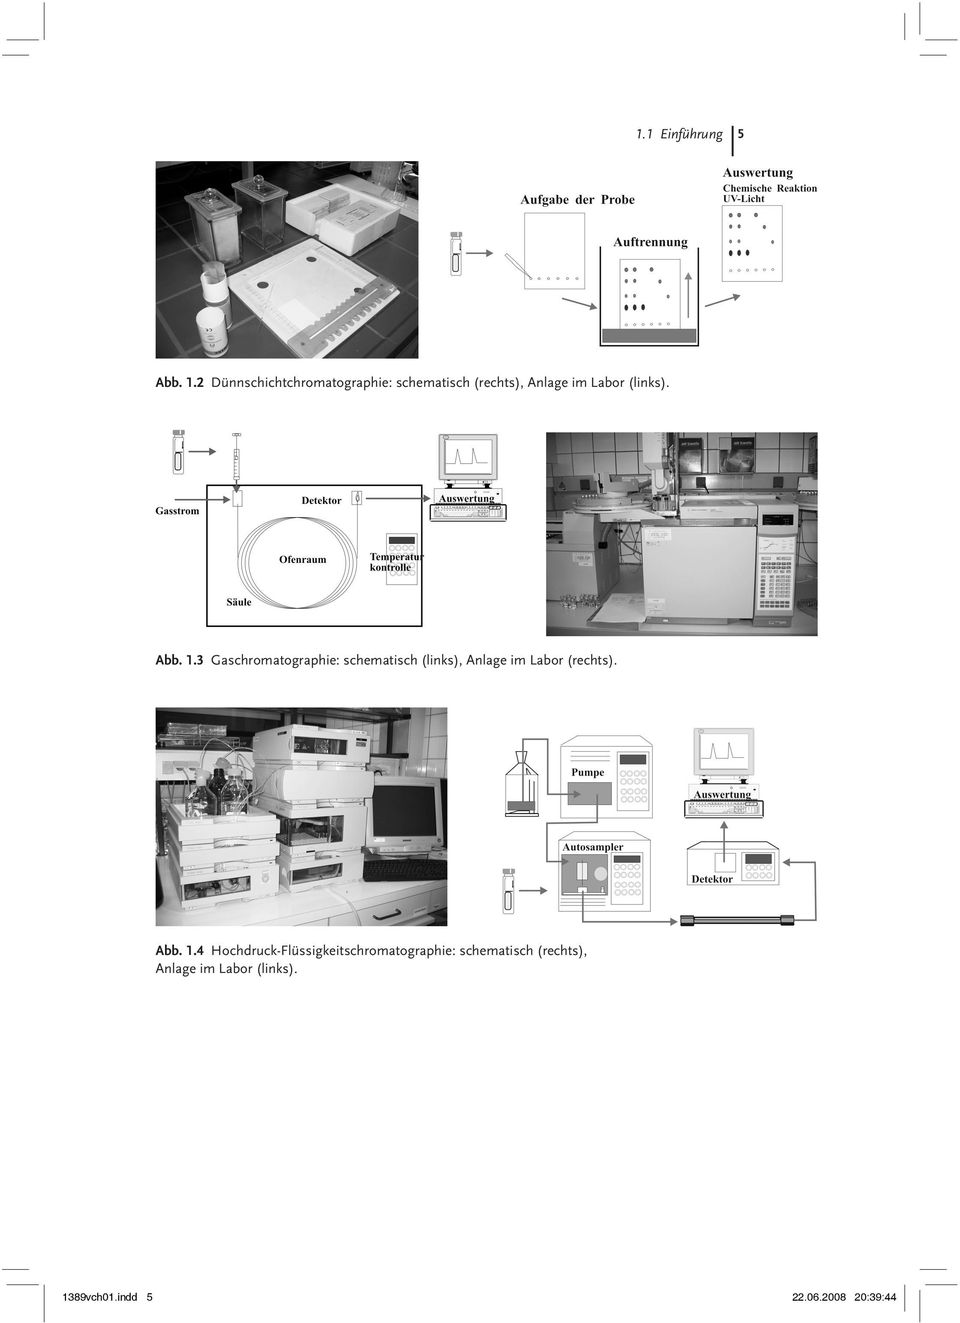 Abb. 1.3 Gaschromatographie: schematisch (links), Anlage im Labor (rechts).